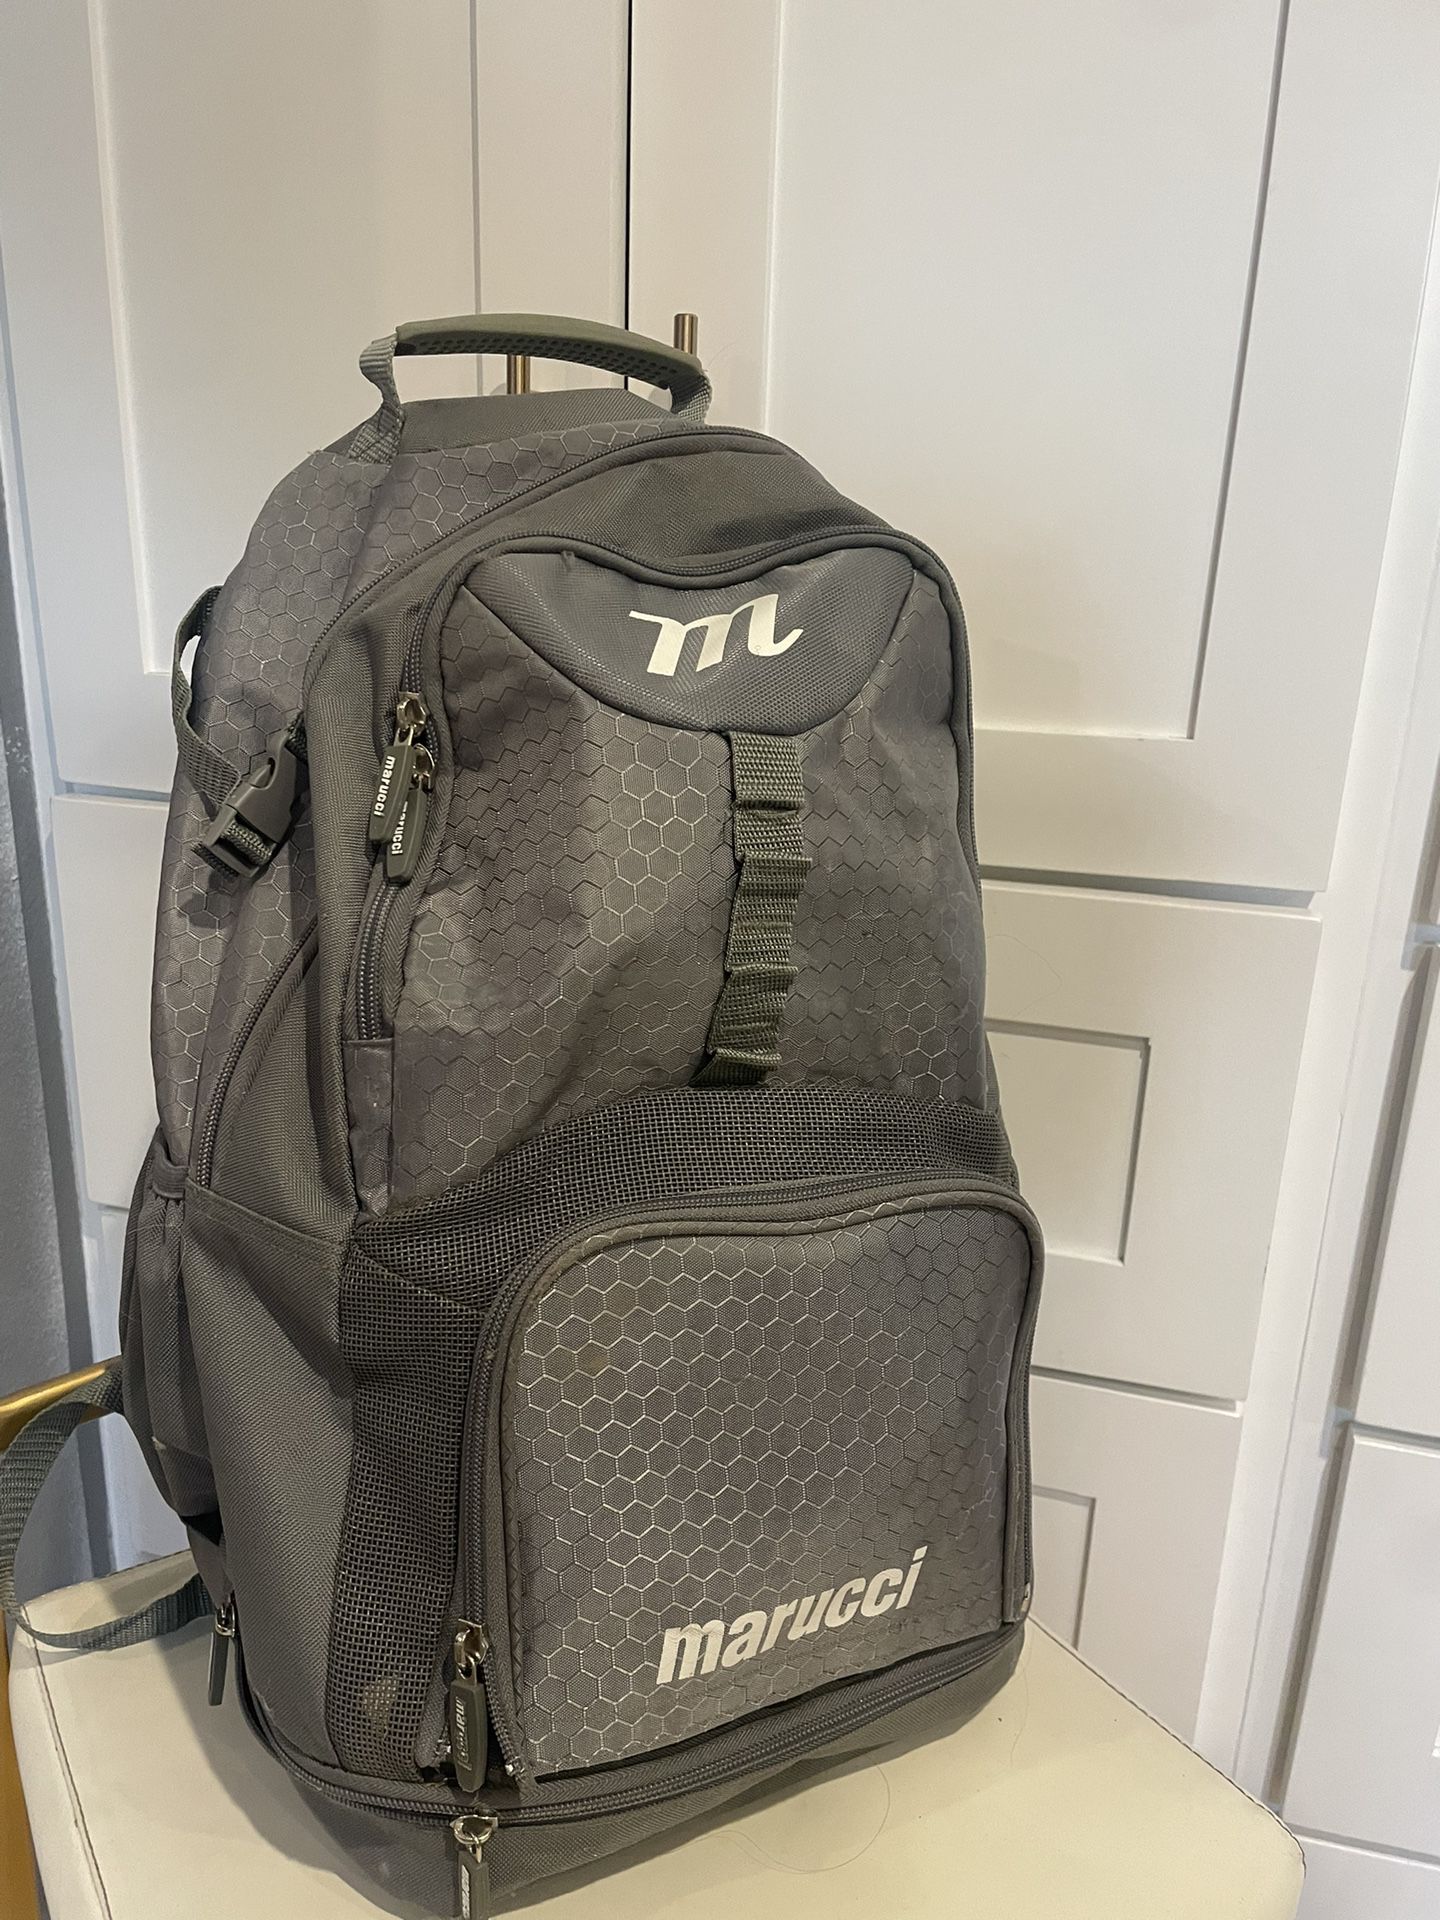 Marucci Baseball Backpack